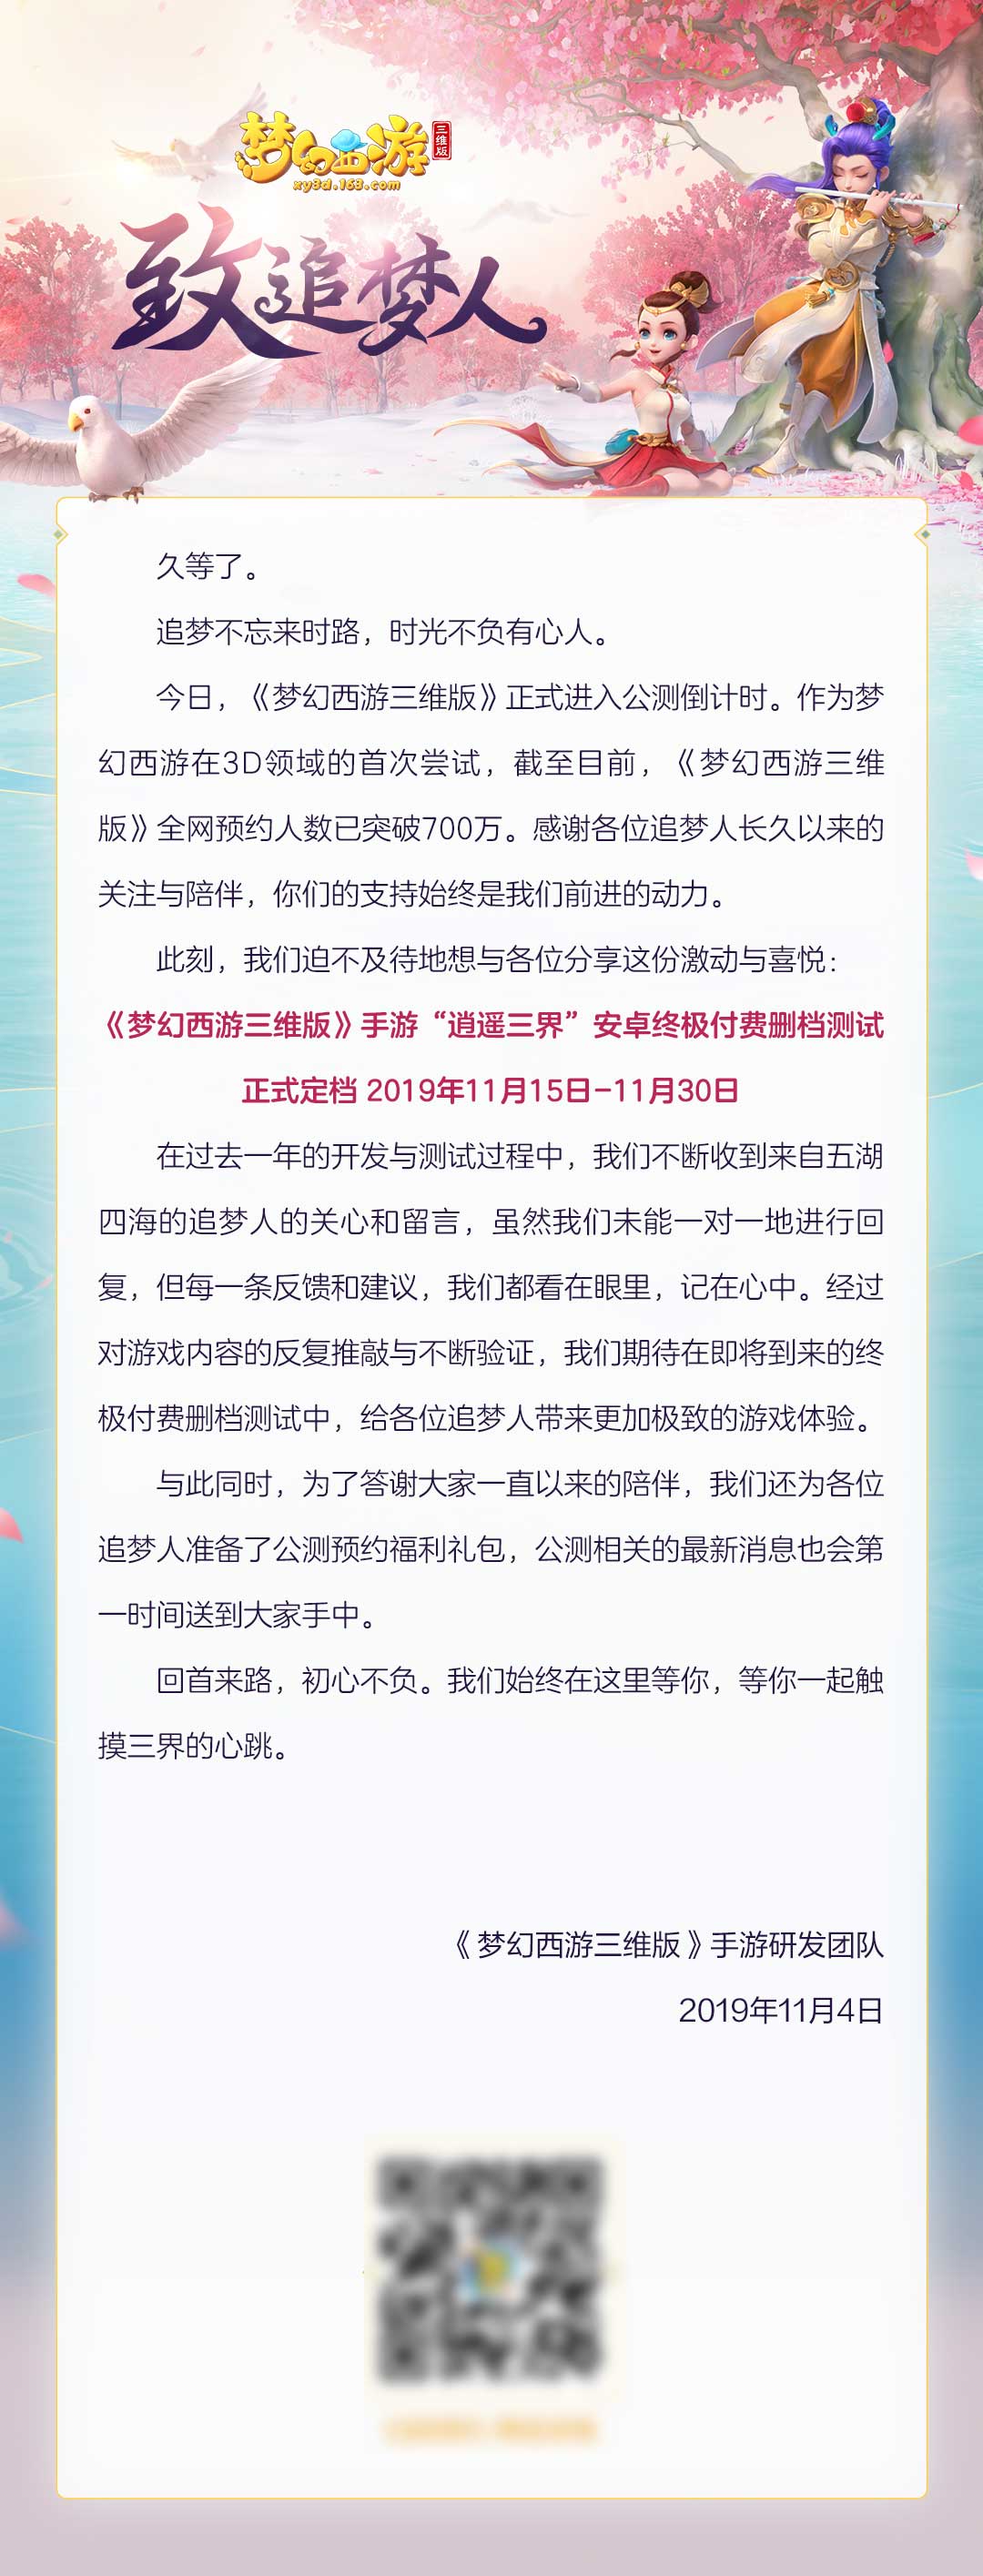 《梦幻西游三维版》手游终极测试定档11月15日!